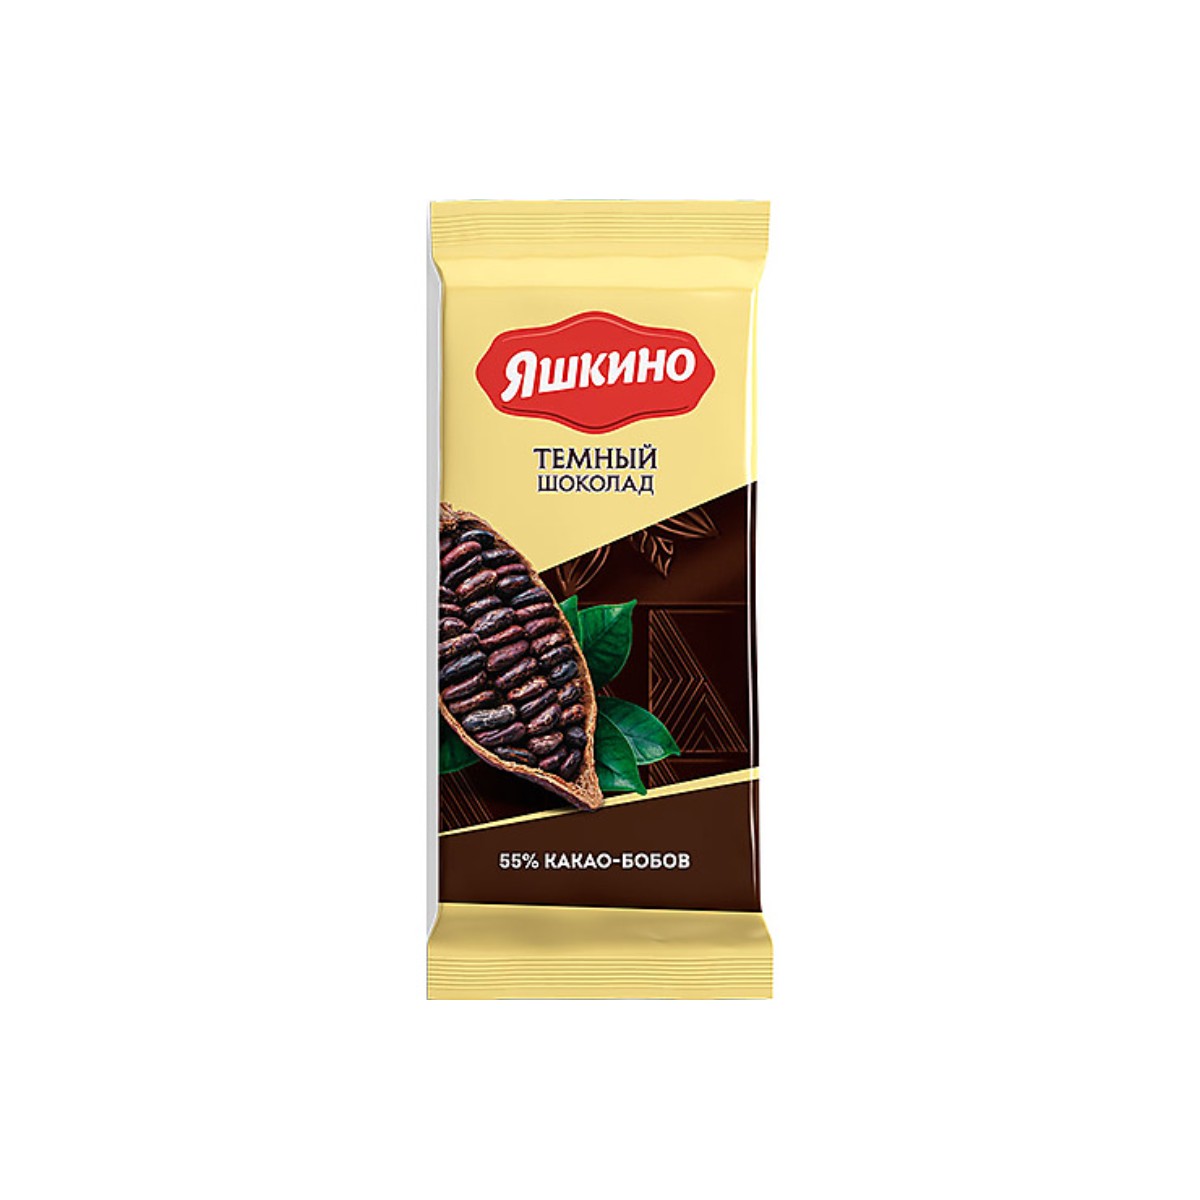 Шоколад Яшкино тёмный, содержание какао 52%, 4 шт по 90 г